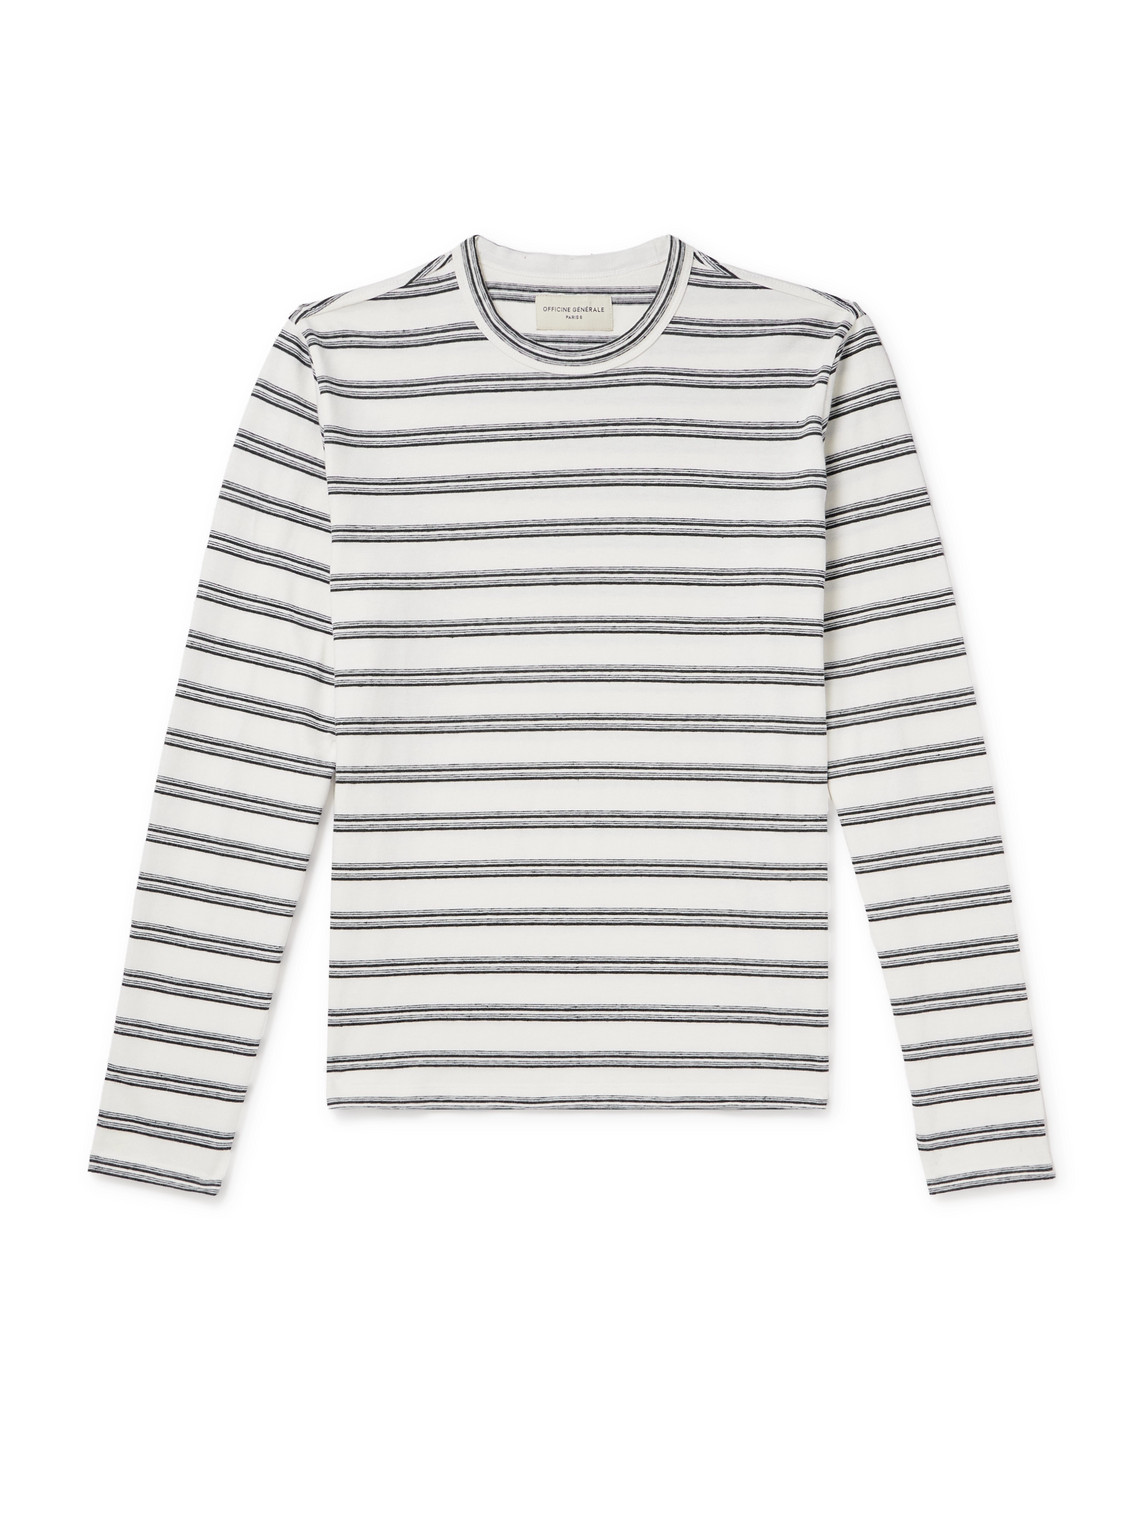 Officine Générale - Striped Cotton and Linen-Blend T-Shirt - Men - Multi - L von Officine Générale